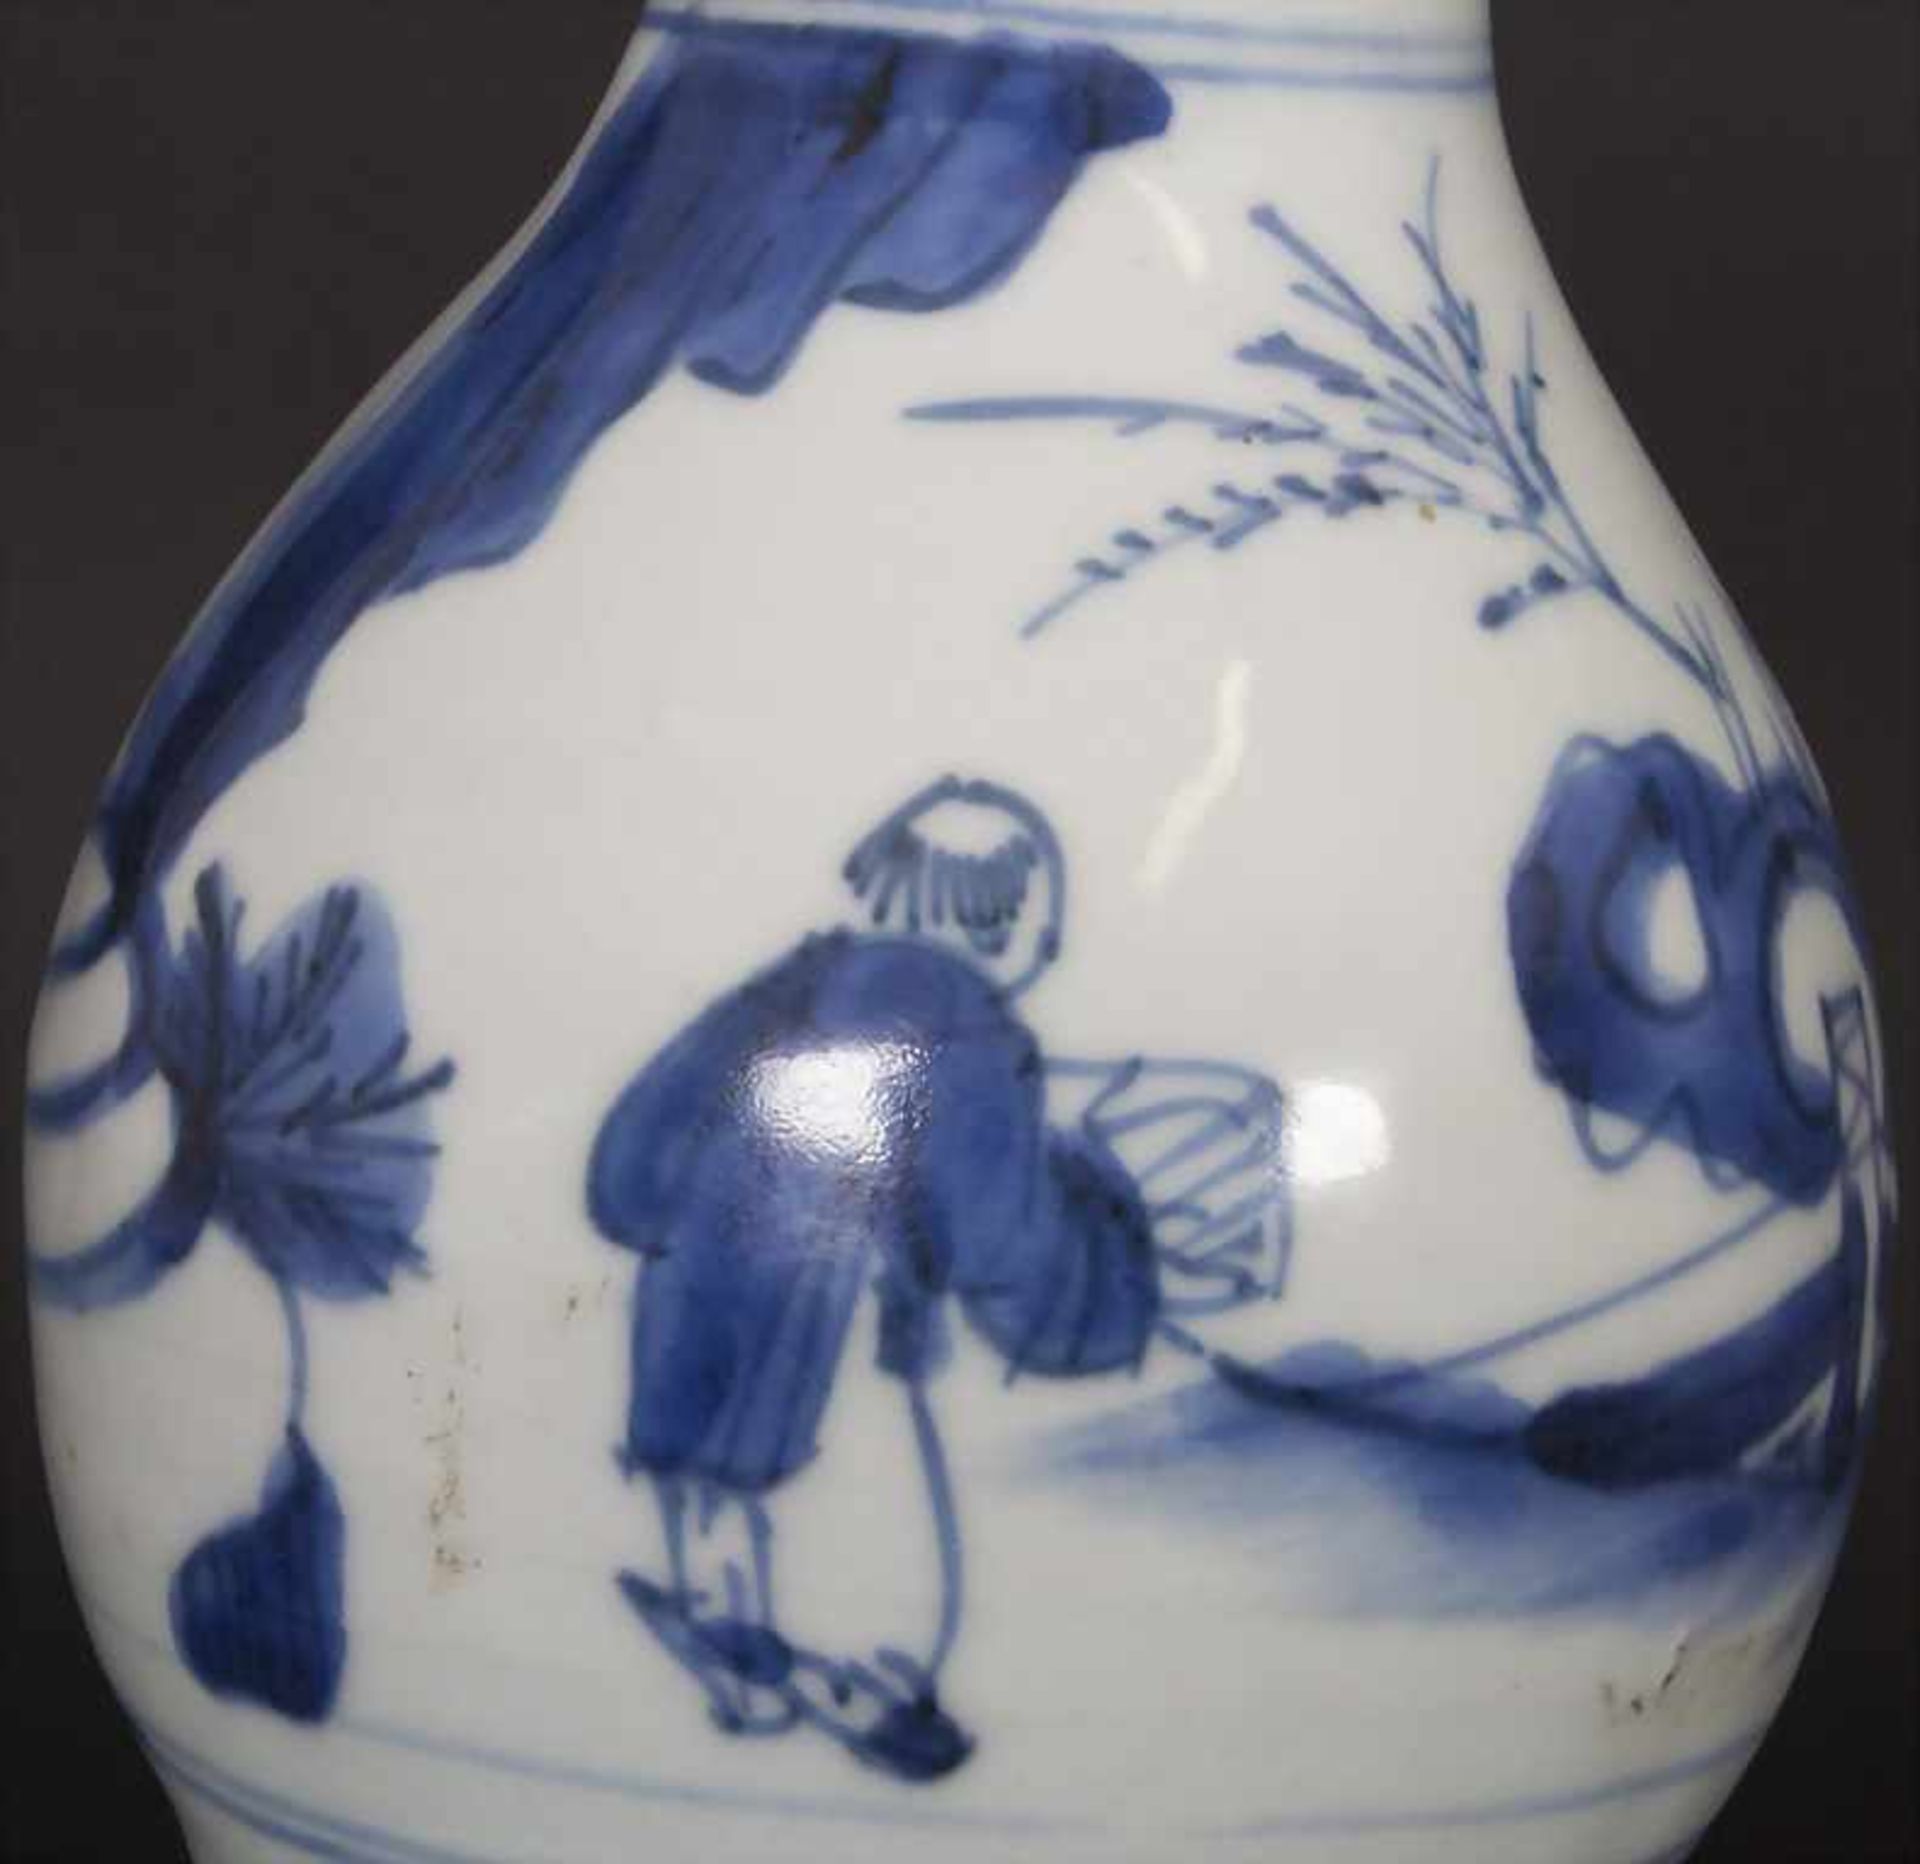 Kalebassenvase / A calabash vase, China, wohl 17. Jh.Material: Porzellan, blaue Unterglasurmalerei, - Bild 5 aus 17